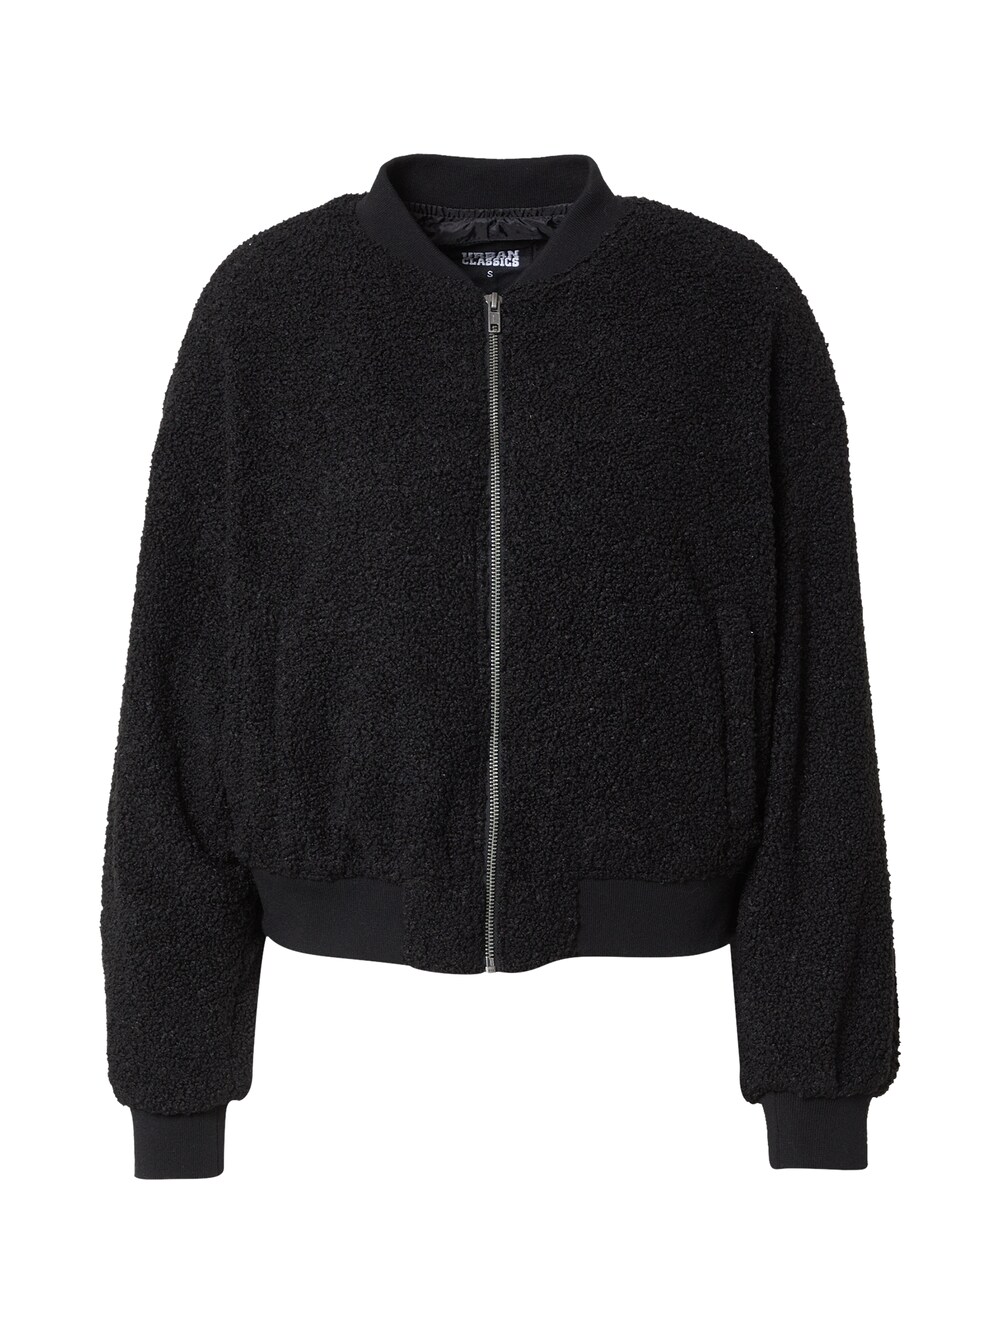 Межсезонная куртка Urban Classics Sherpa, черный